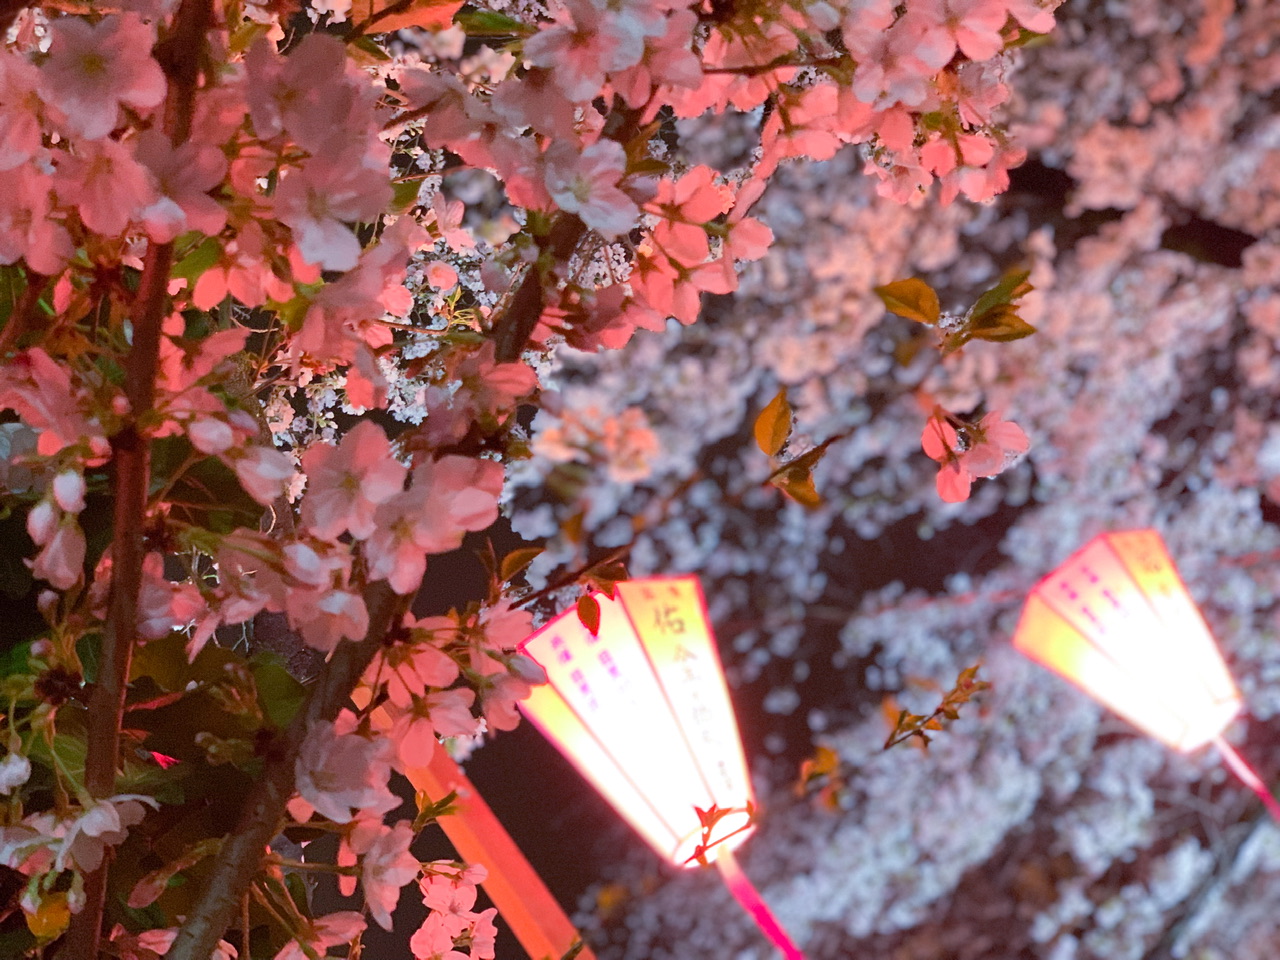 2023年の中目黒の桜は17時〜20時でライトアップされています！ 桜の木の下にある灯りがライトアップされて、川の水面に反射するのがとても綺麗でした！